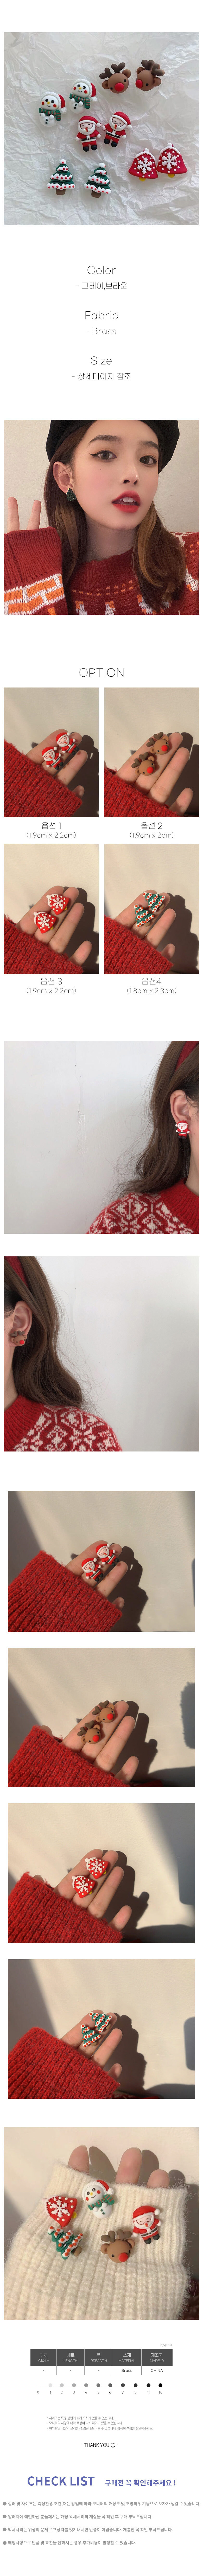 클쓰 성탄절 귀여운 크리스마스 귀걸이 1,900원 - 카플스 패션잡화, 주얼리, 귀걸이, 패션 바보사랑 클쓰 성탄절 귀여운 크리스마스 귀걸이 1,900원 - 카플스 패션잡화, 주얼리, 귀걸이, 패션 바보사랑